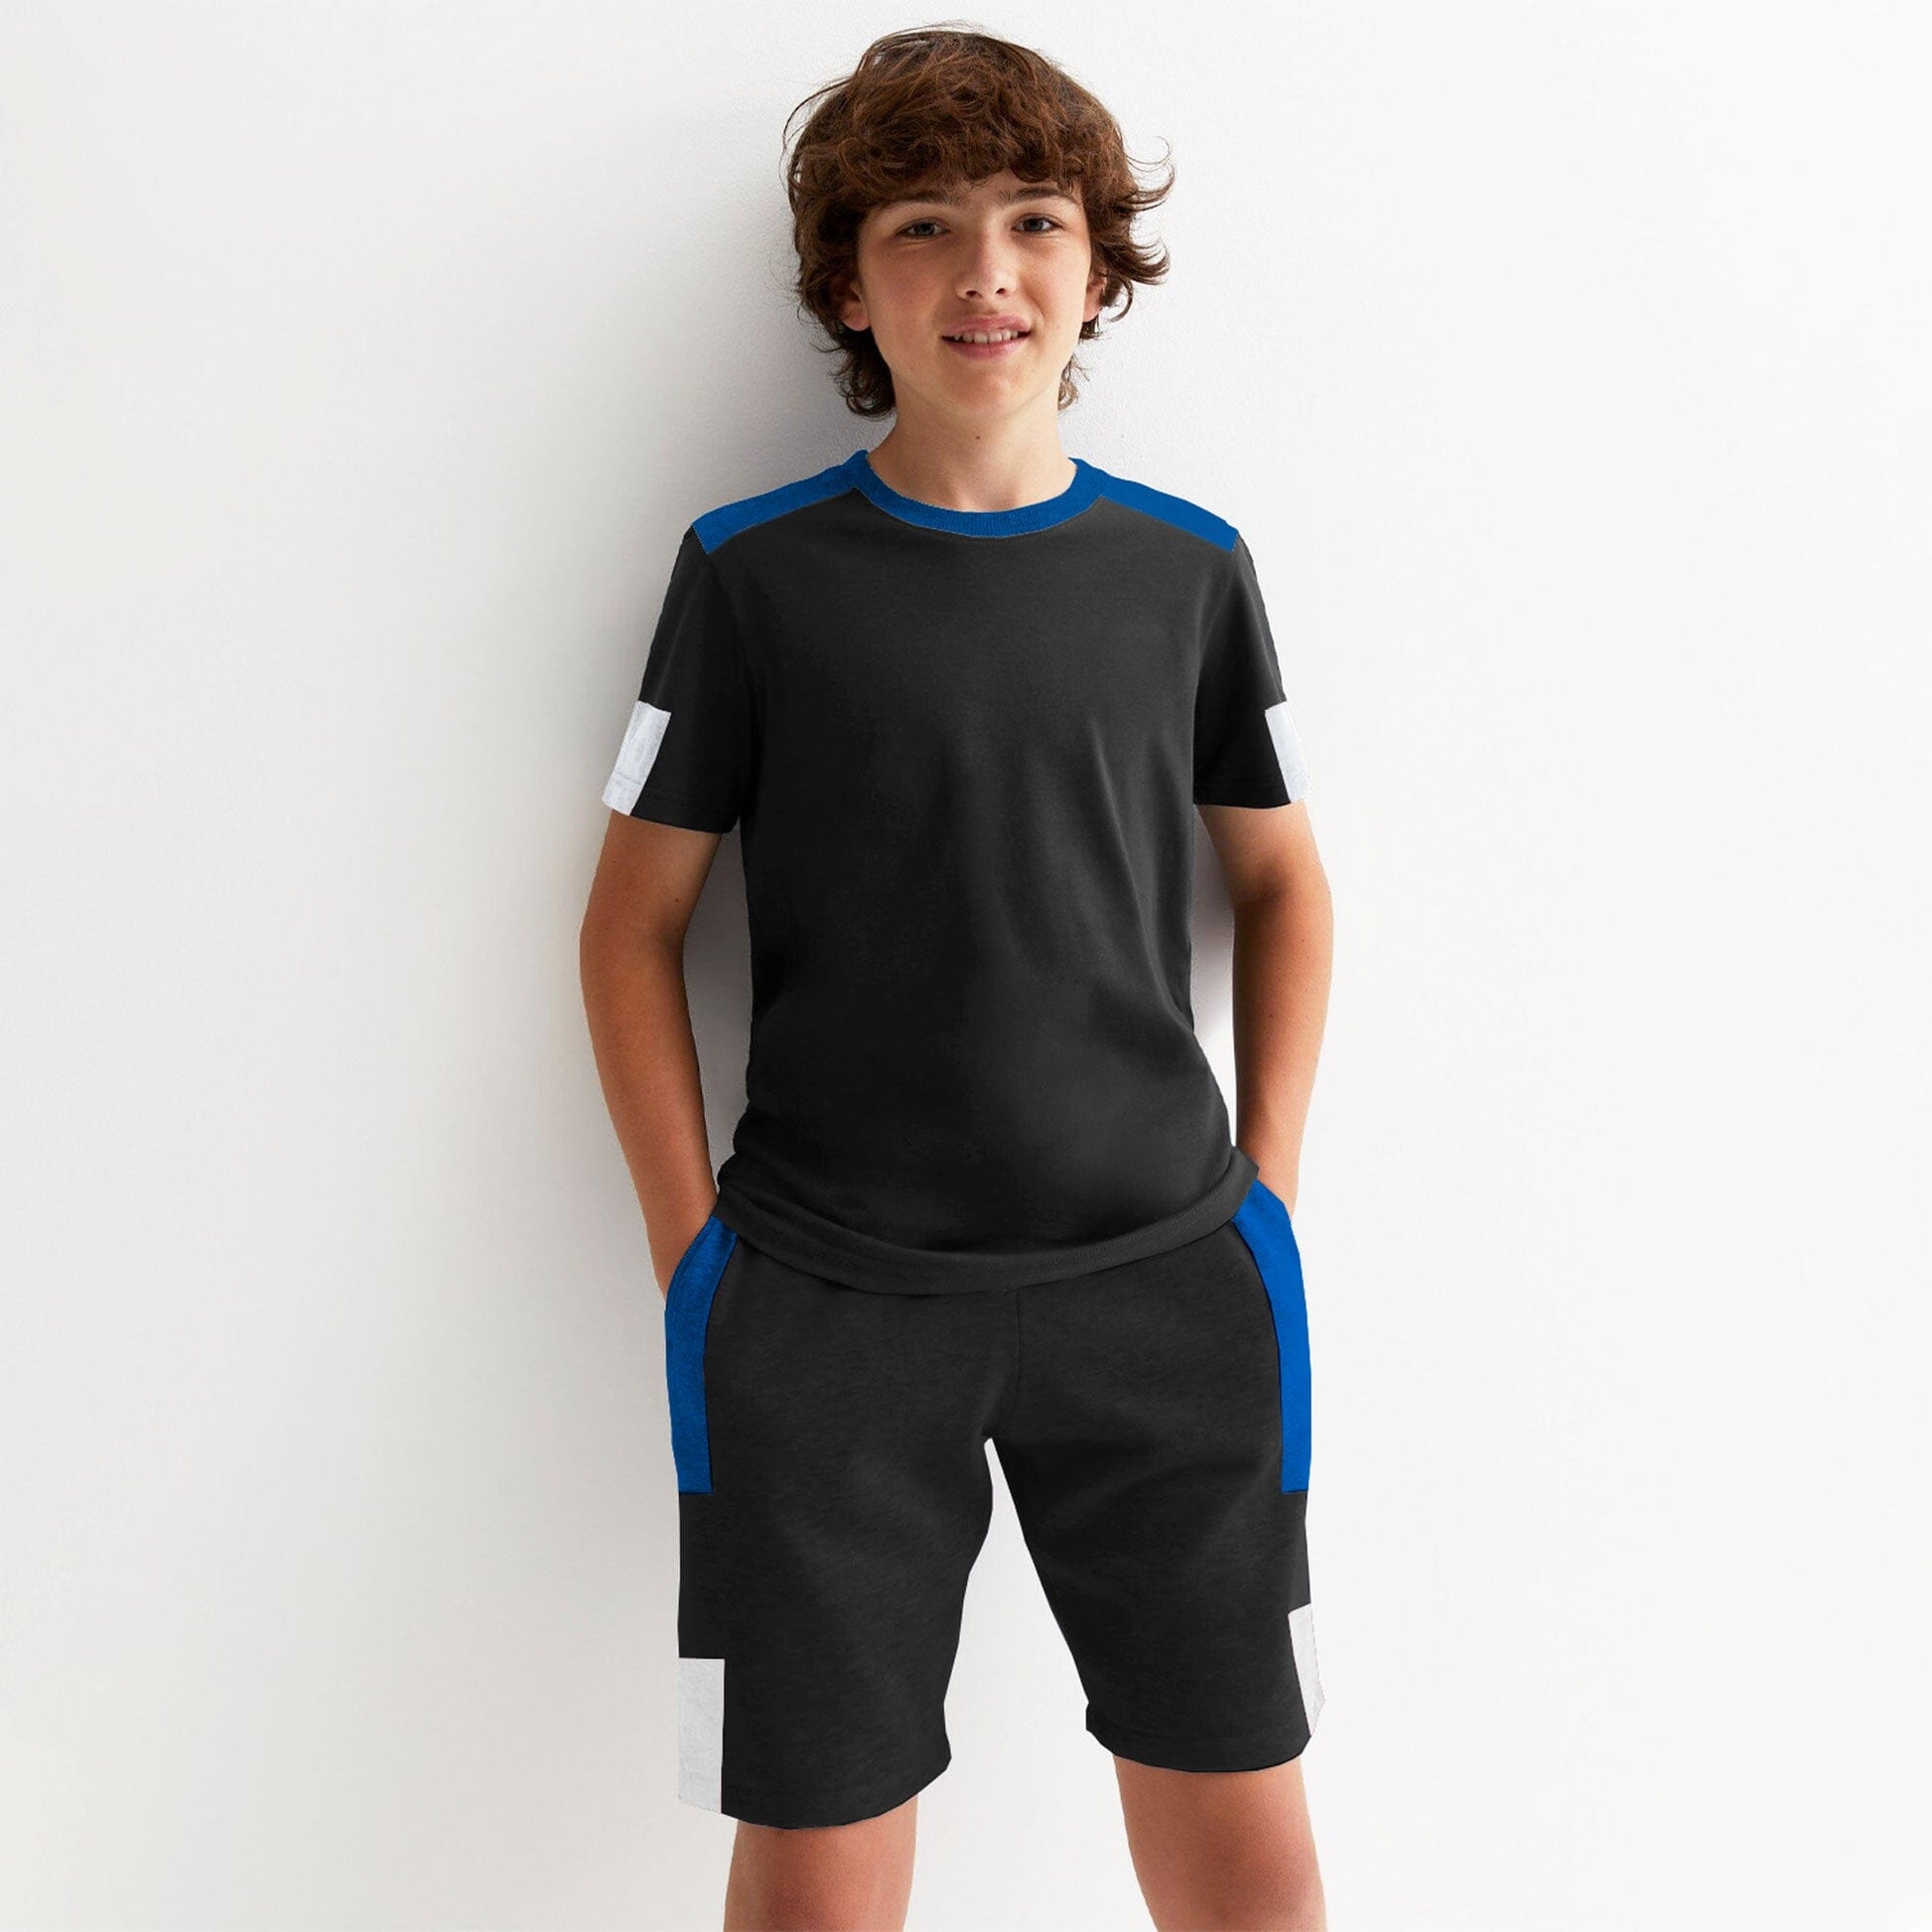 Kid's Liege Contrast Panel Style Soccer Suit Boy's Suit Set Minhas Garments Black 1 Years 